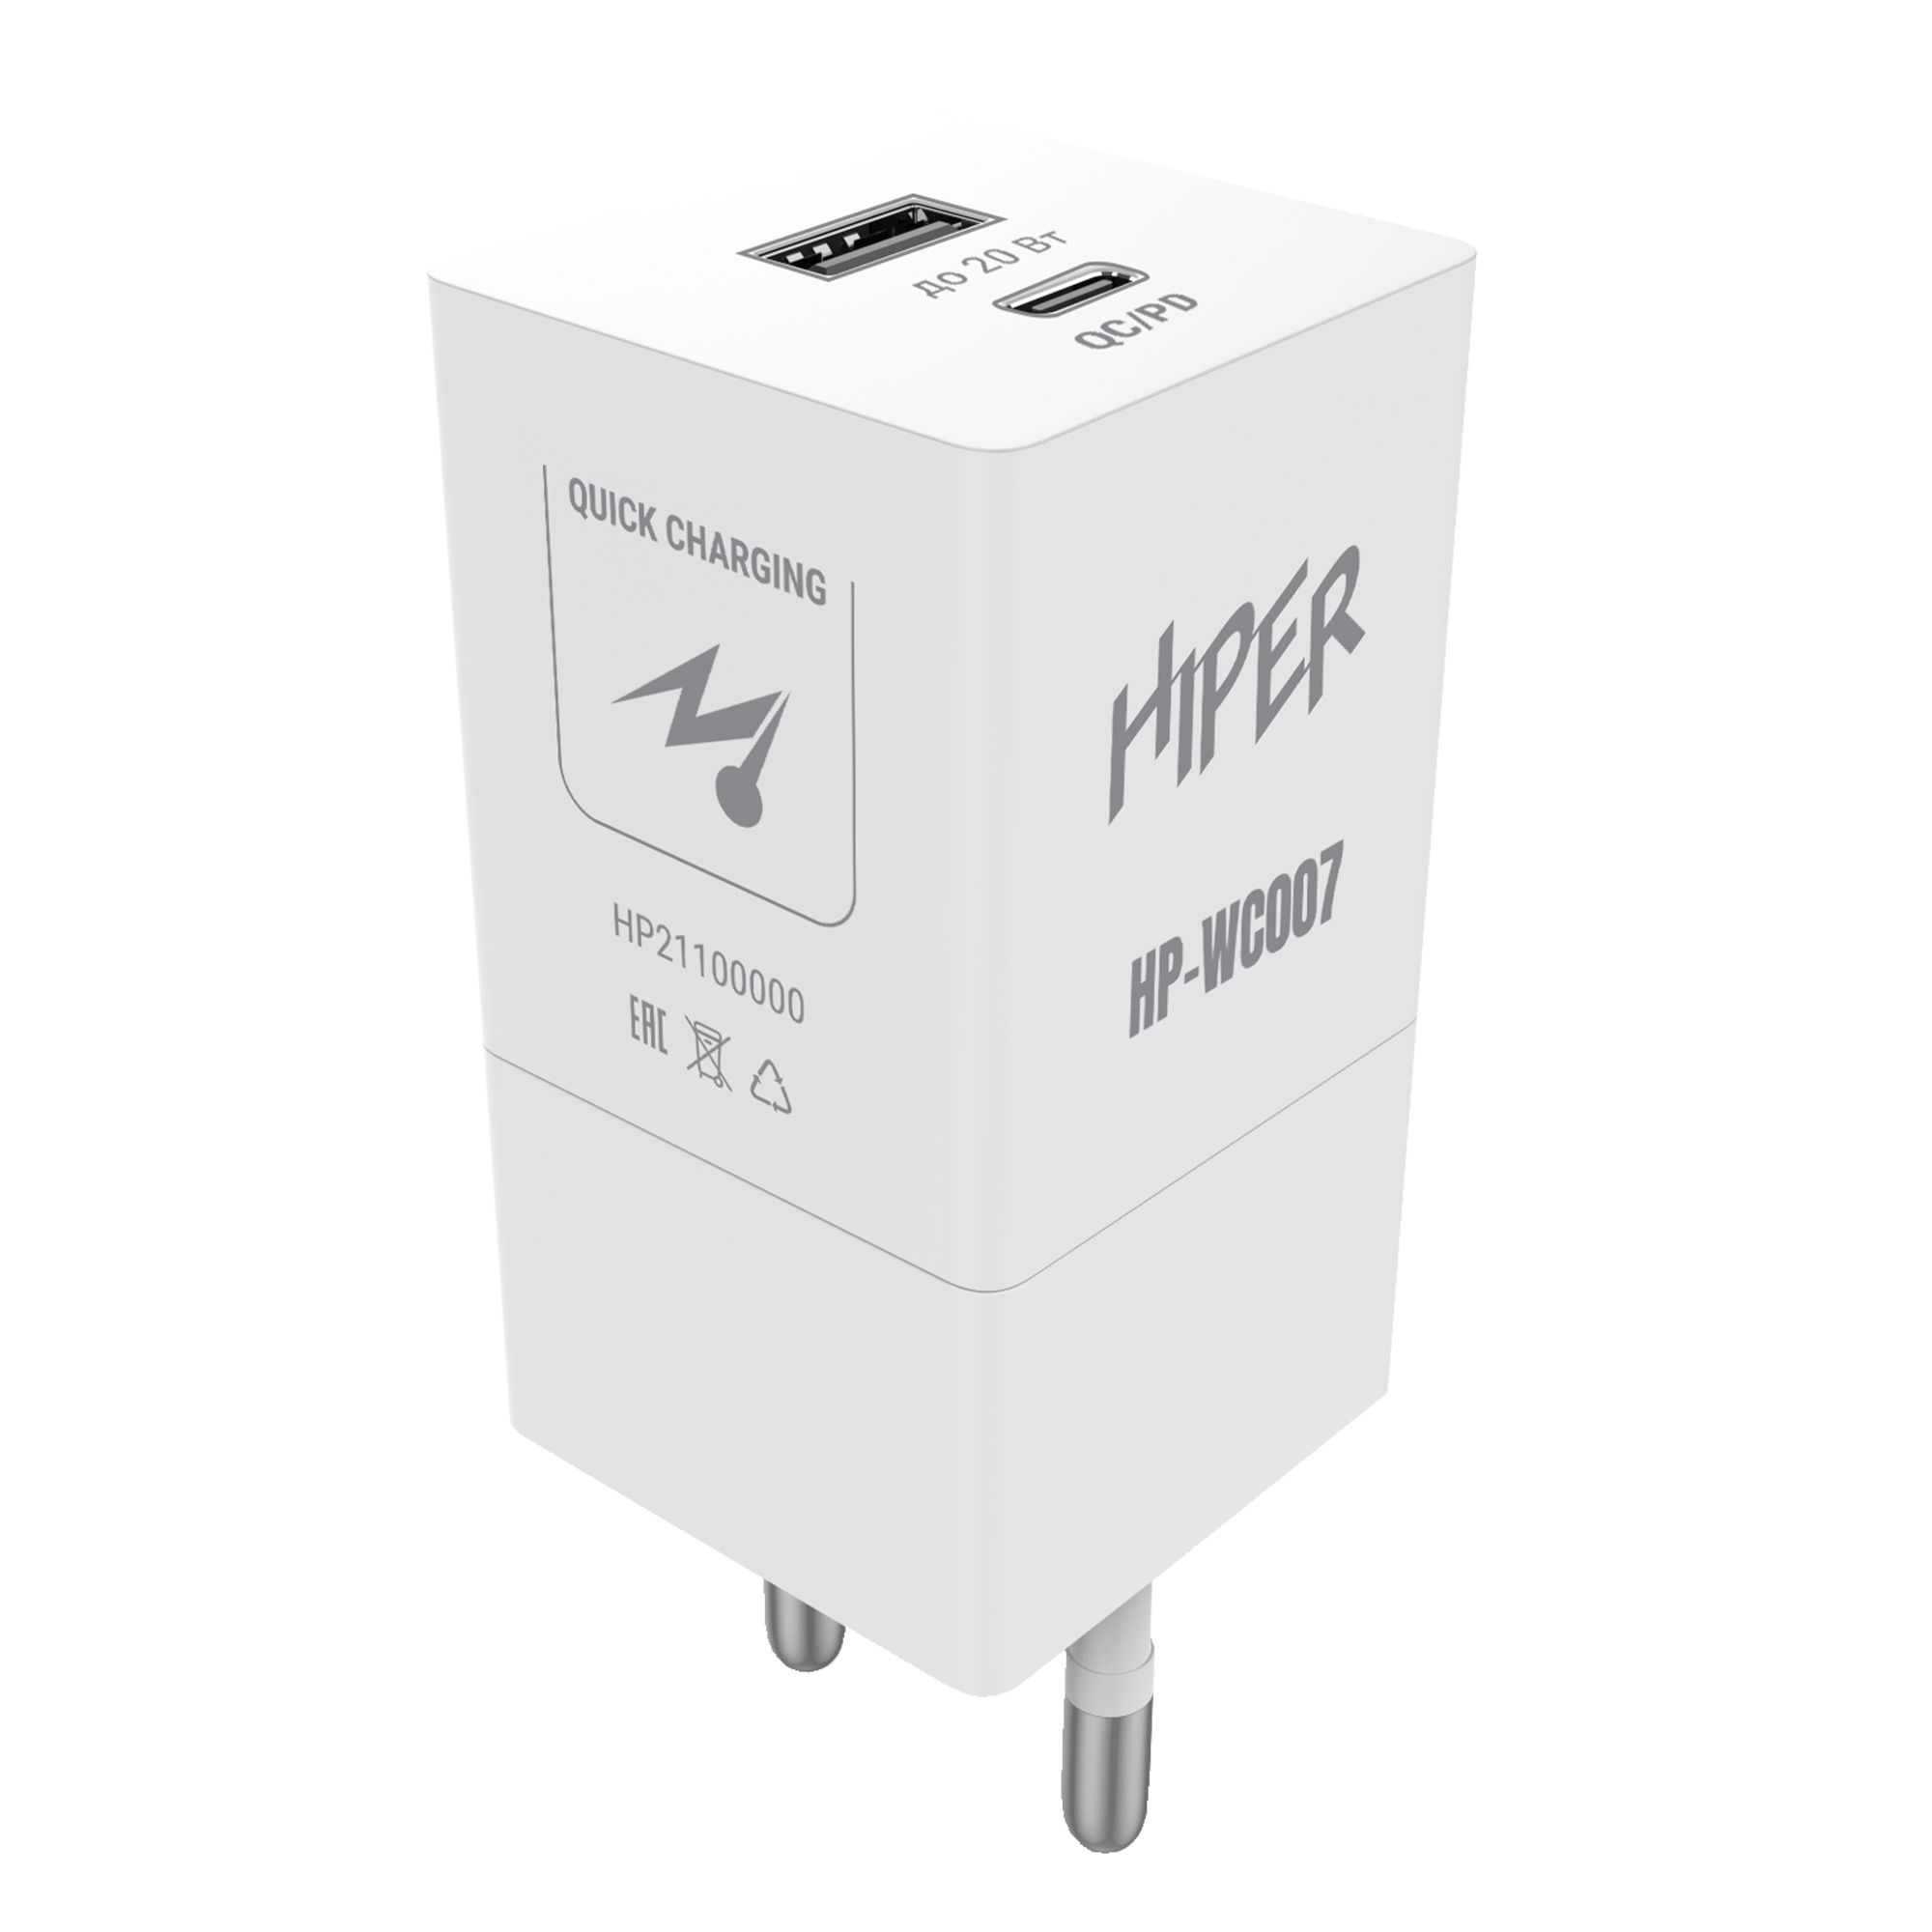 Сетевое зарядное устройство HIPER HP-WC007 20W, 1USB, USB type-C, Quick Charge, PD, 3A, белый